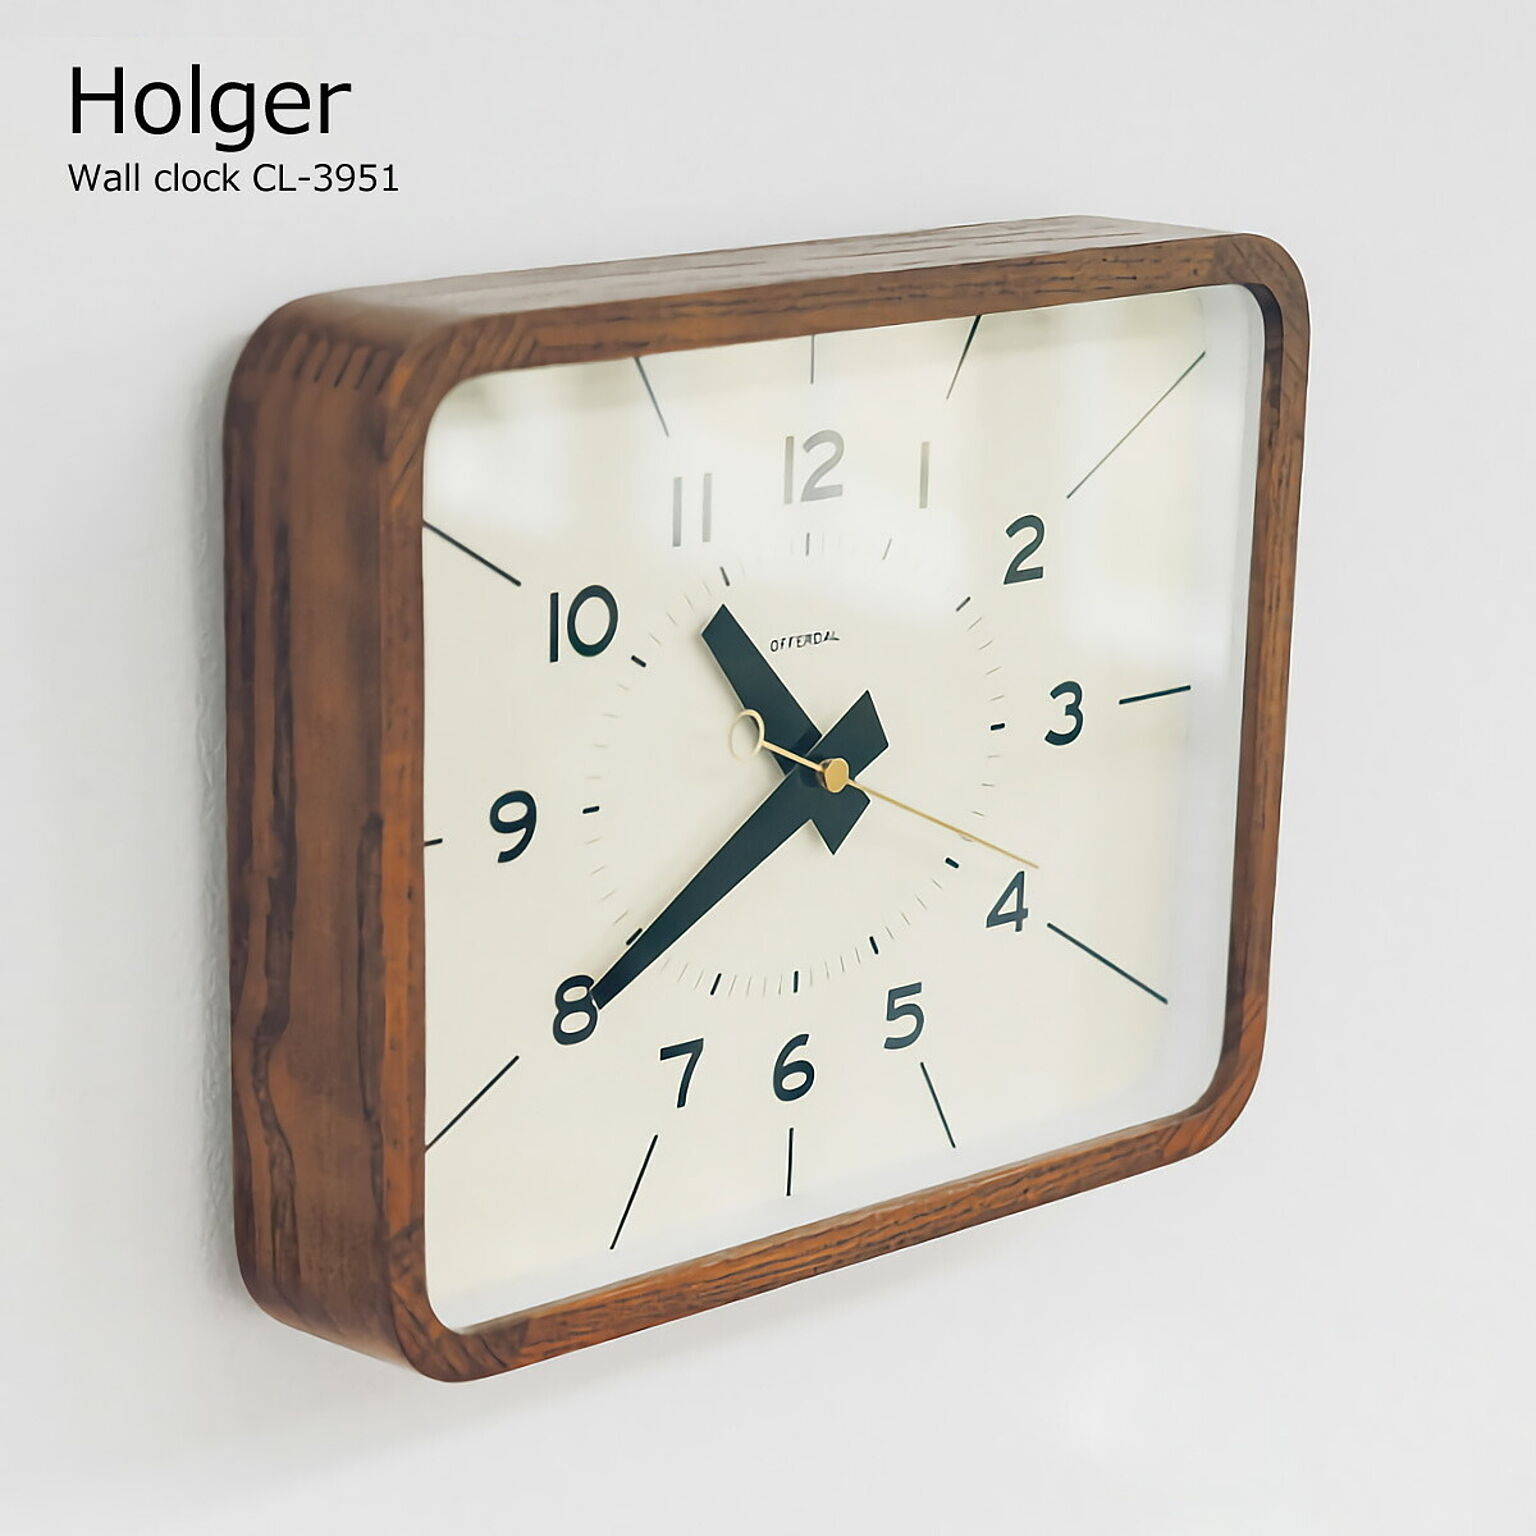 壁掛け時計 おしゃれ 時計 壁掛け 北欧 掛け時計 Holger ホルガー CL-3951 ミッドセンチュリー 四角 長方形 静音 音がしない 木製 インテリア ウォールクロック オシャレ レトロ